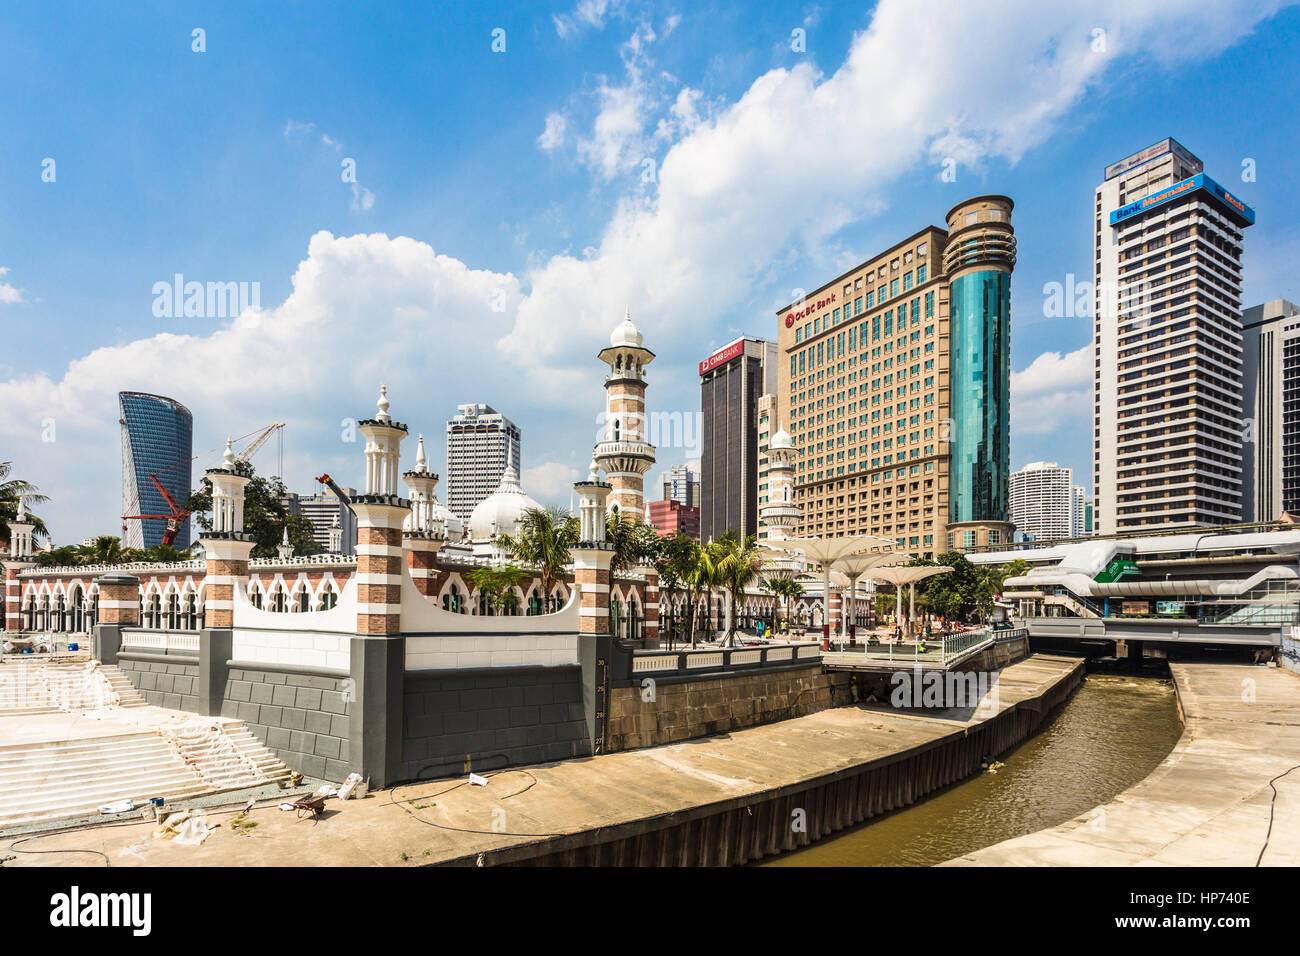 KUALA LUMPUR, MALAISIE - 11 janvier 2017 : l'architecture islamique de la mosquée Jamek contraste avec les immeubles de bureaux modernes dans la région de Kuala Lumpur. Ce M Banque D'Images